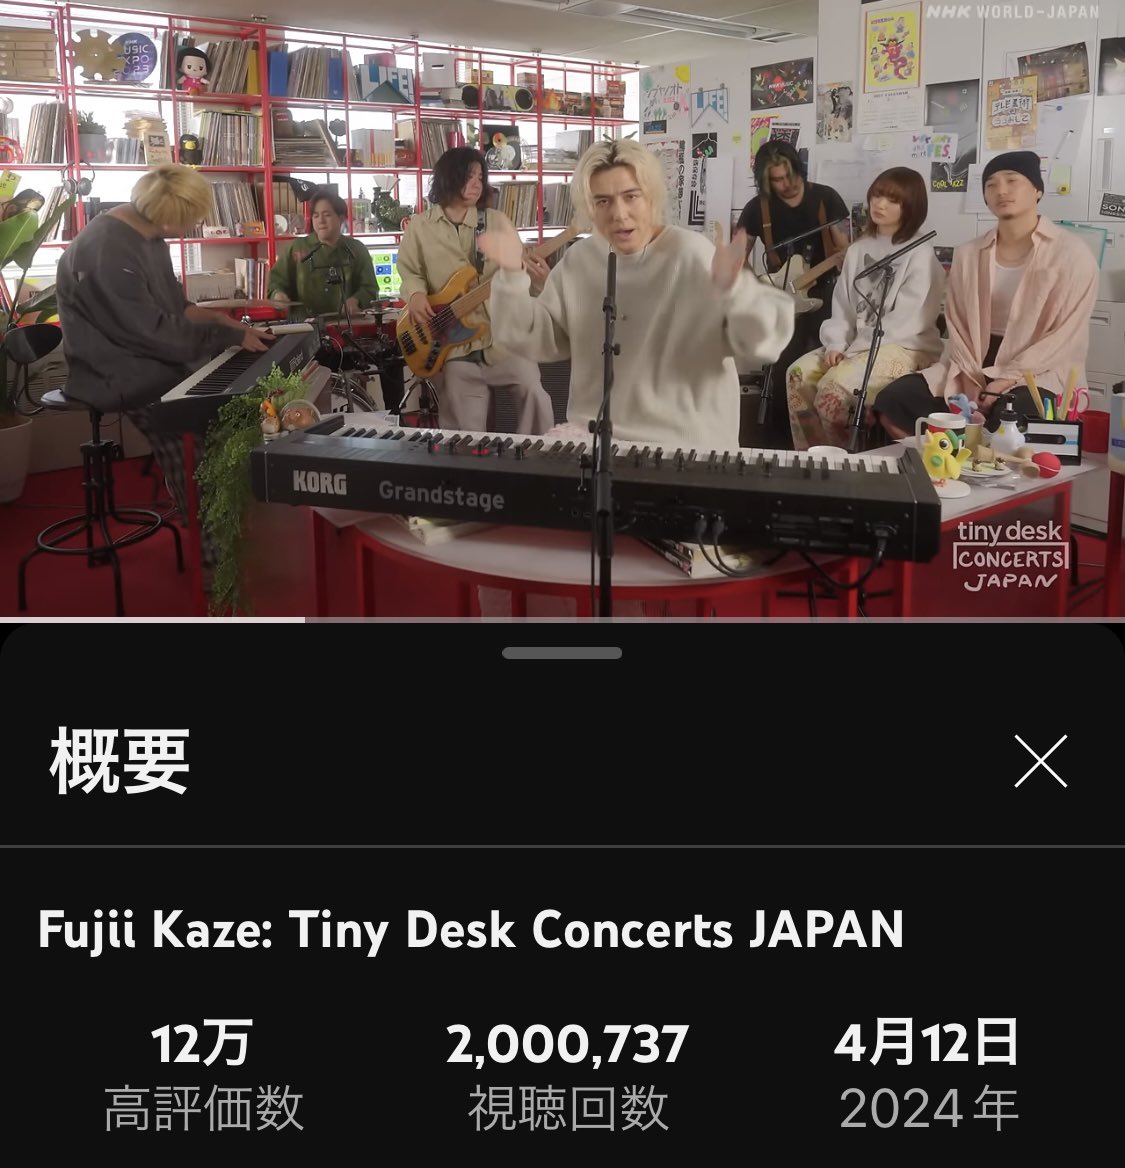 寝る前にTDC観てたら200万回視聴超えたので記念に㊗️👏
#tinydeskconcerts
#fujiikaze